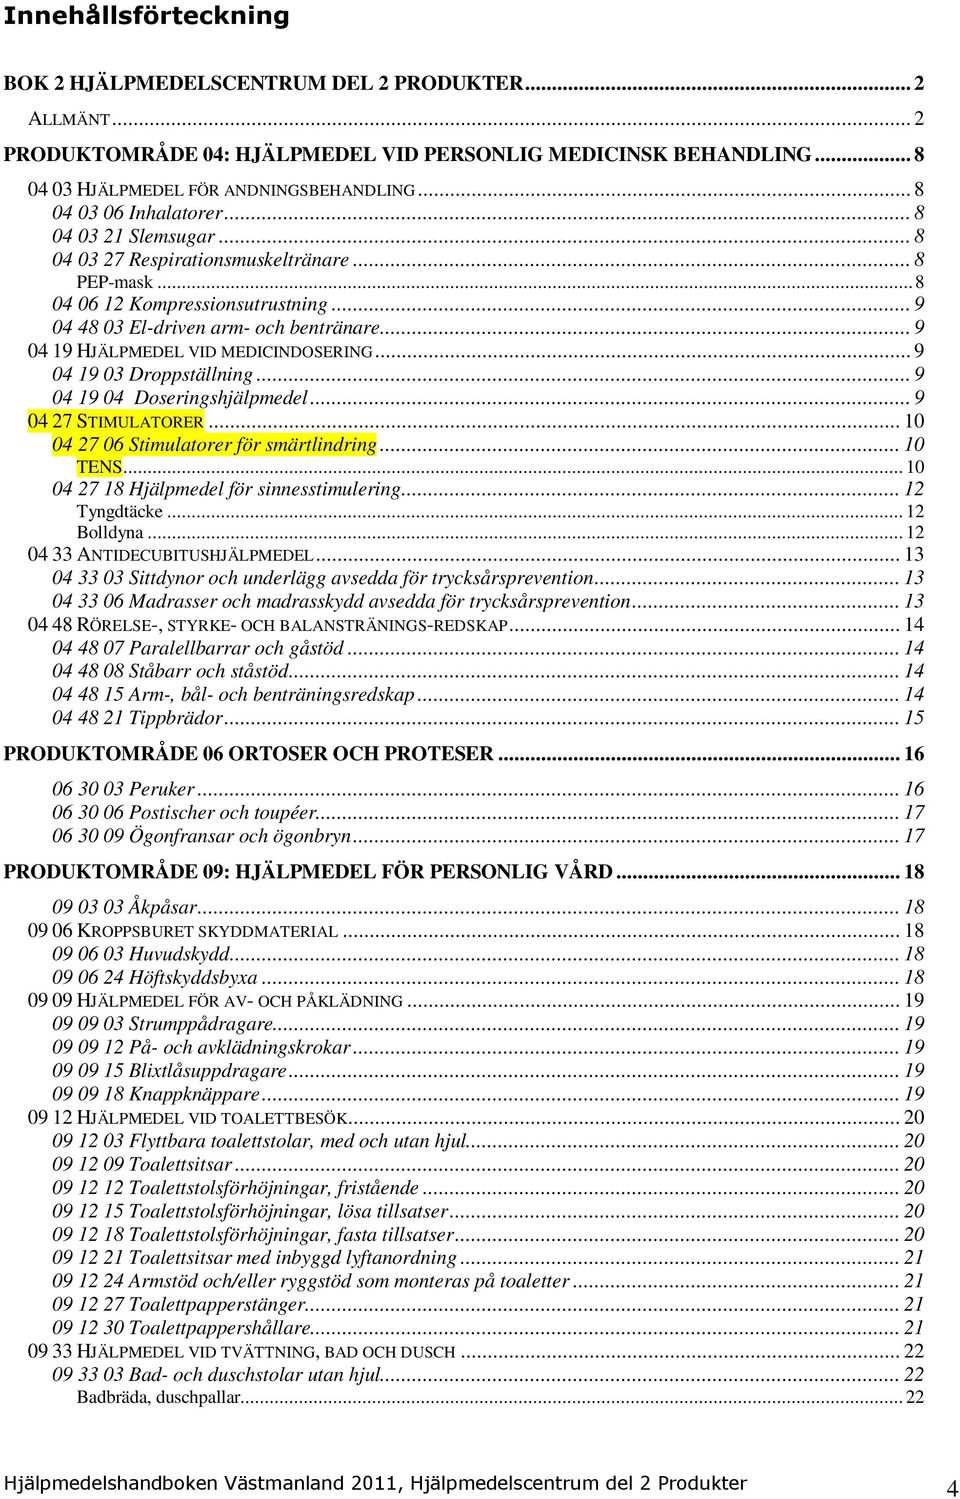 Hjälpmedelshandboken för Västmanland Gäller från 1 juli Bok 2  Hjälpmedelscentrum del 2 Produkter - PDF Gratis nedladdning